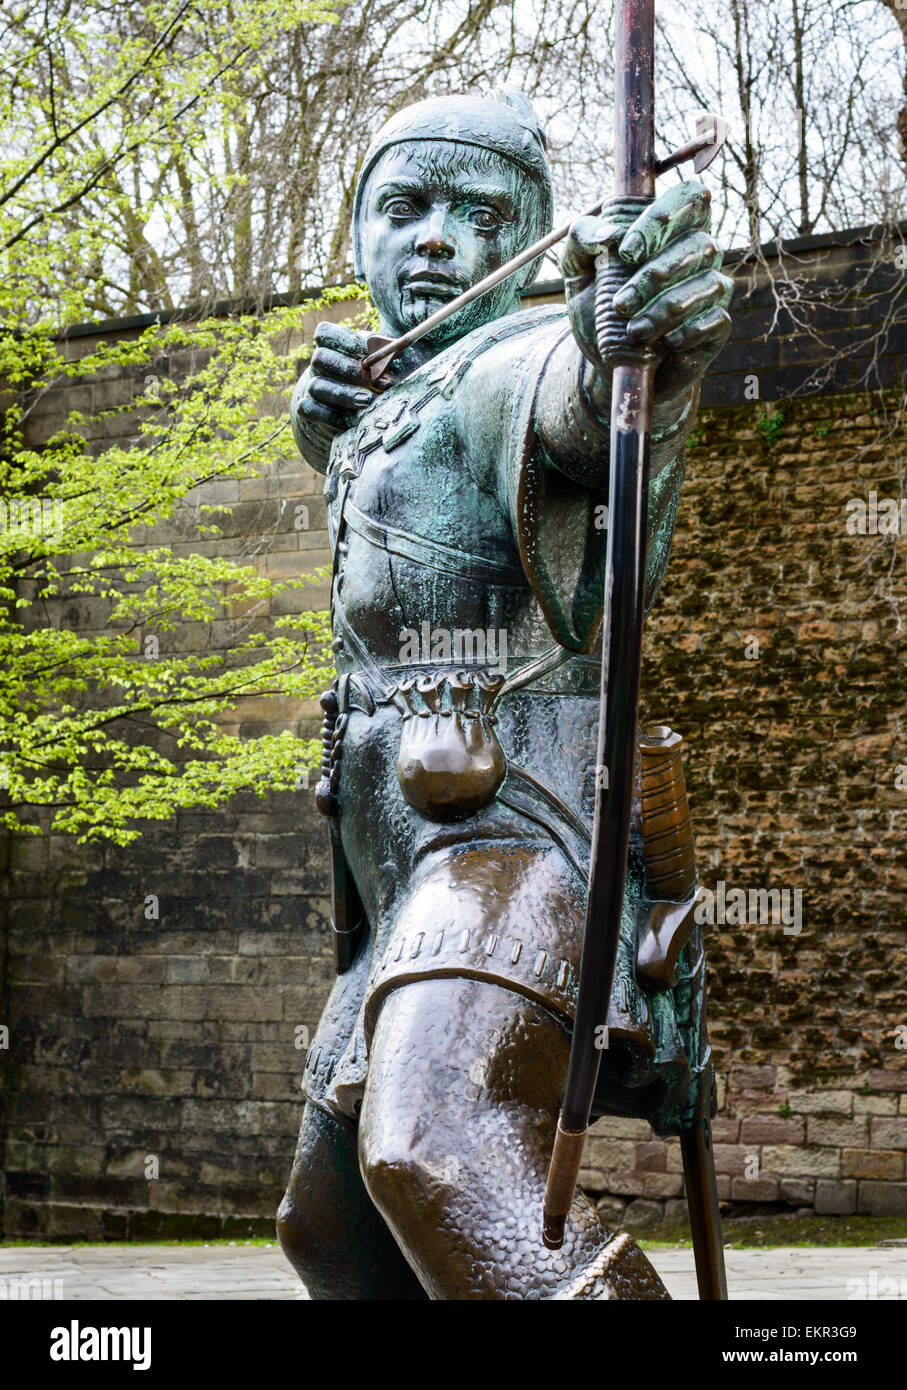 NOTTINGHAM, ANGLETERRE - 12 avril : La statue de Robin des Bois, près de château de Nottingham. Le 12 avril, 2015, à Nottingham, Angleterre. Banque D'Images